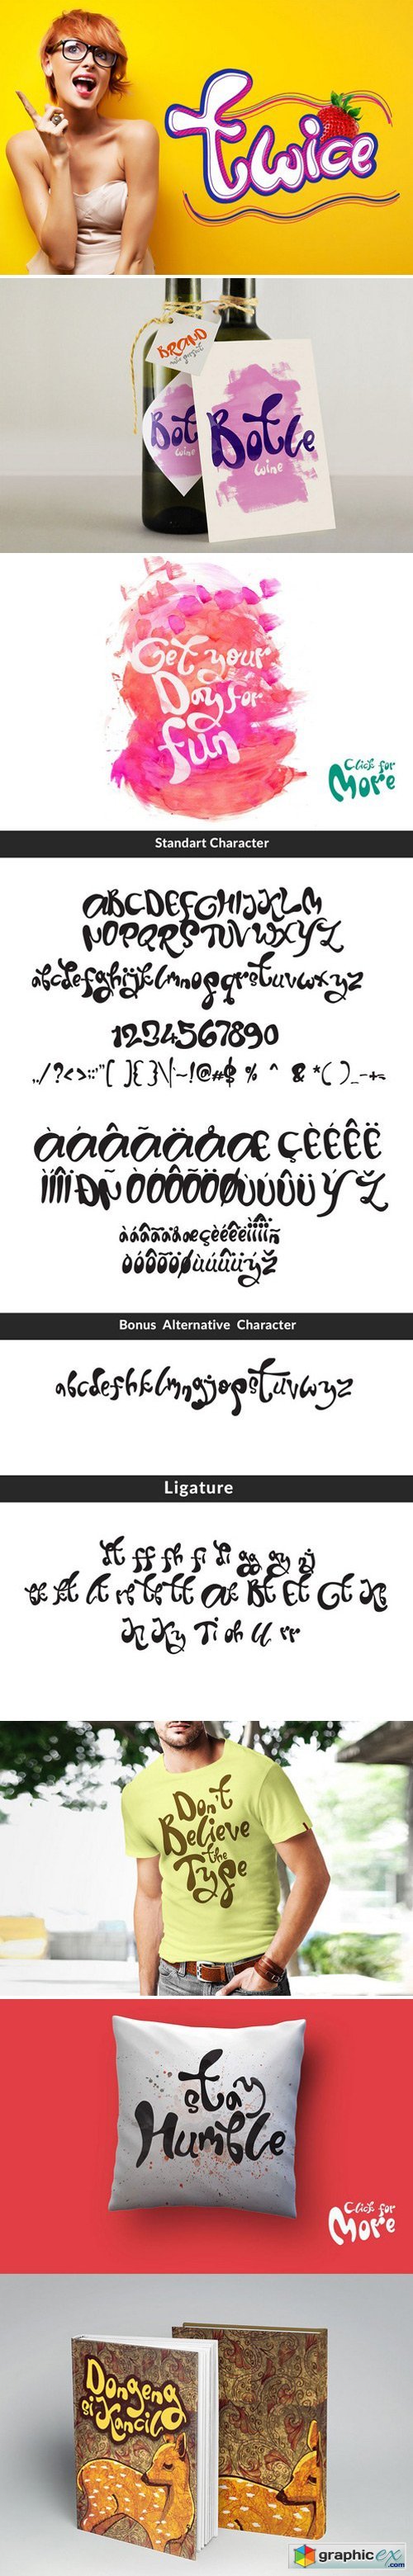 Twice Display Typeface